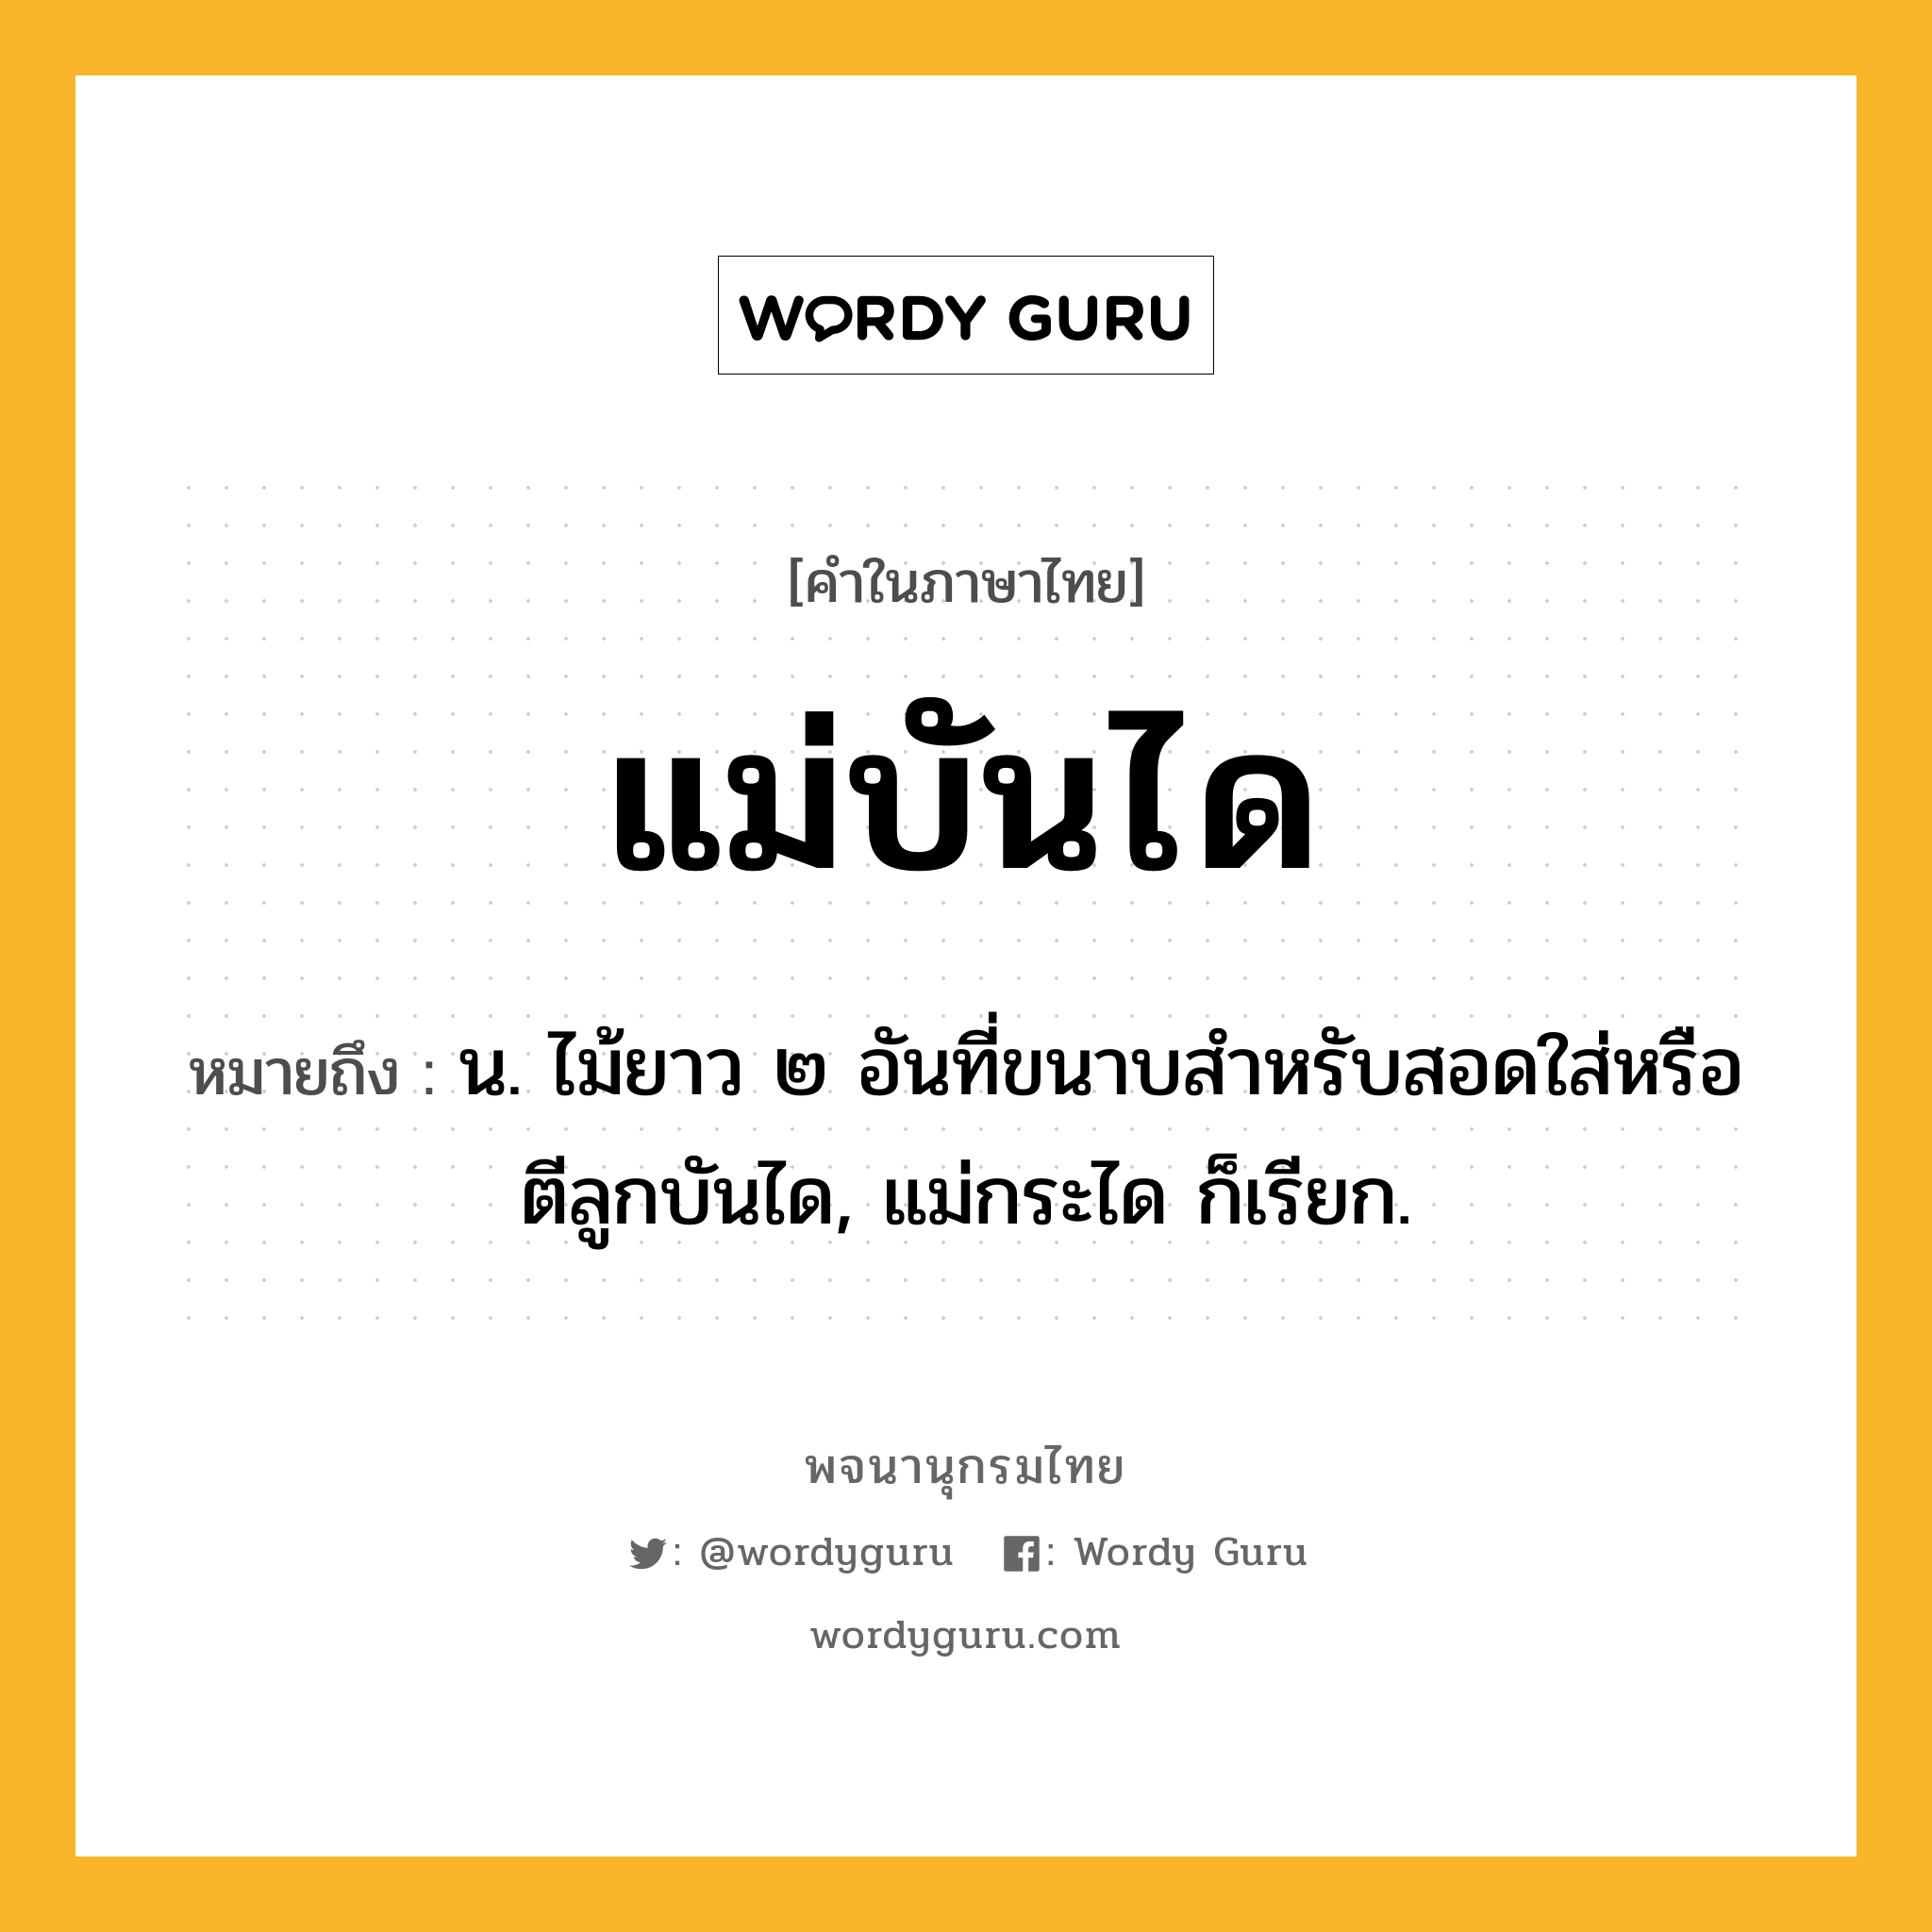 แม่บันได ความหมาย หมายถึงอะไร?, คำในภาษาไทย แม่บันได หมายถึง น. ไม้ยาว ๒ อันที่ขนาบสำหรับสอดใส่หรือตีลูกบันได, แม่กระได ก็เรียก.